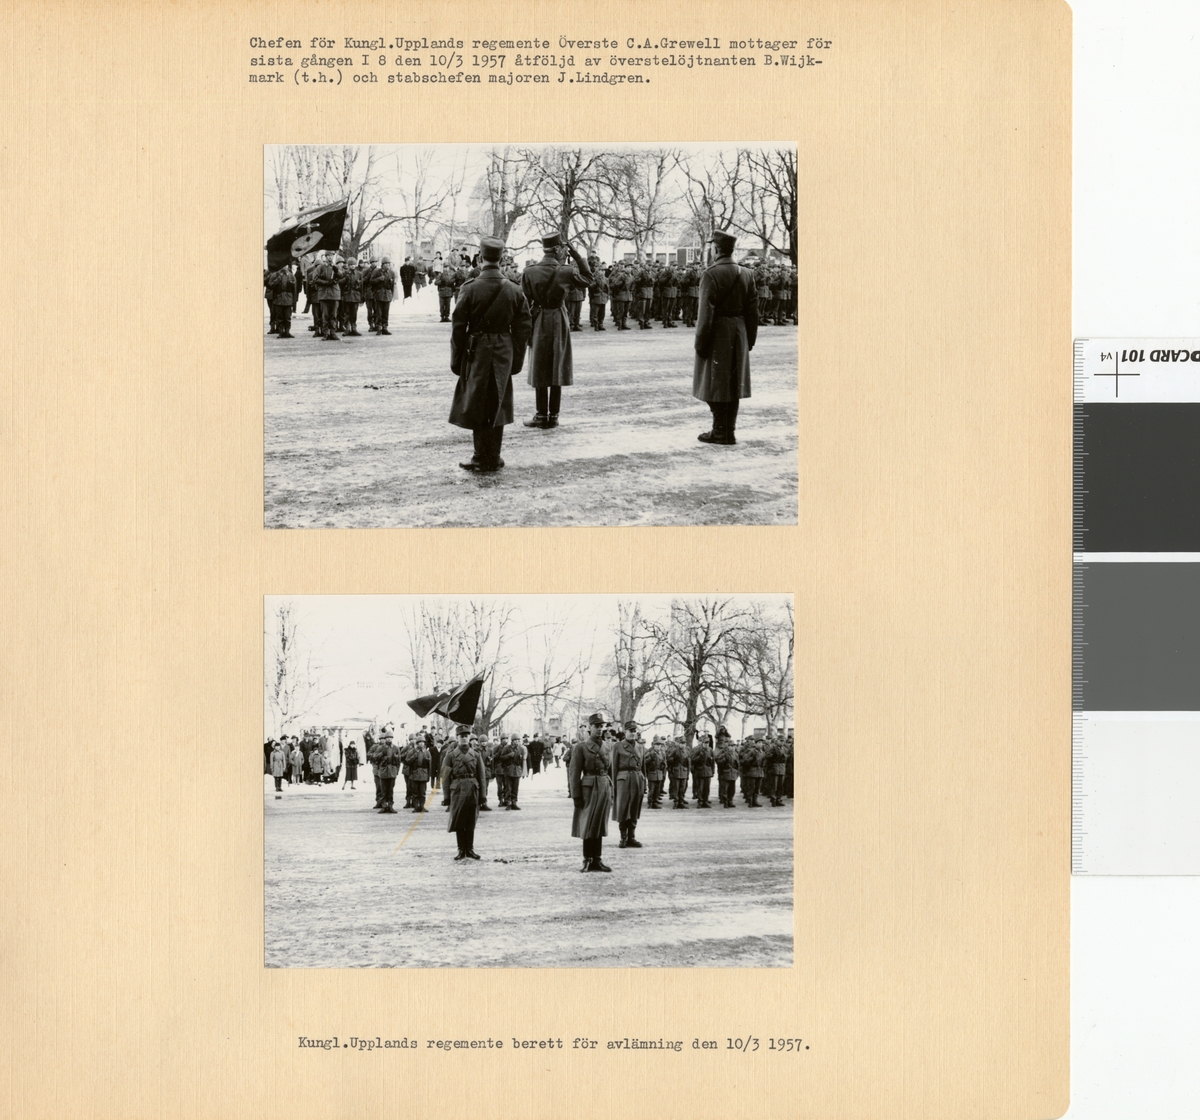 Text i fotoalbum: "Avskedesparaden 10 mars 1957. Chefen för Kungl. Upplands regemente överste C.A. Grewell mottager för sista gången I 8 den 10/3 1957 åtföljd av överstelöjtnanten B. Wijkmark (t.h.) och stabschefen majoren J. Lindgren"